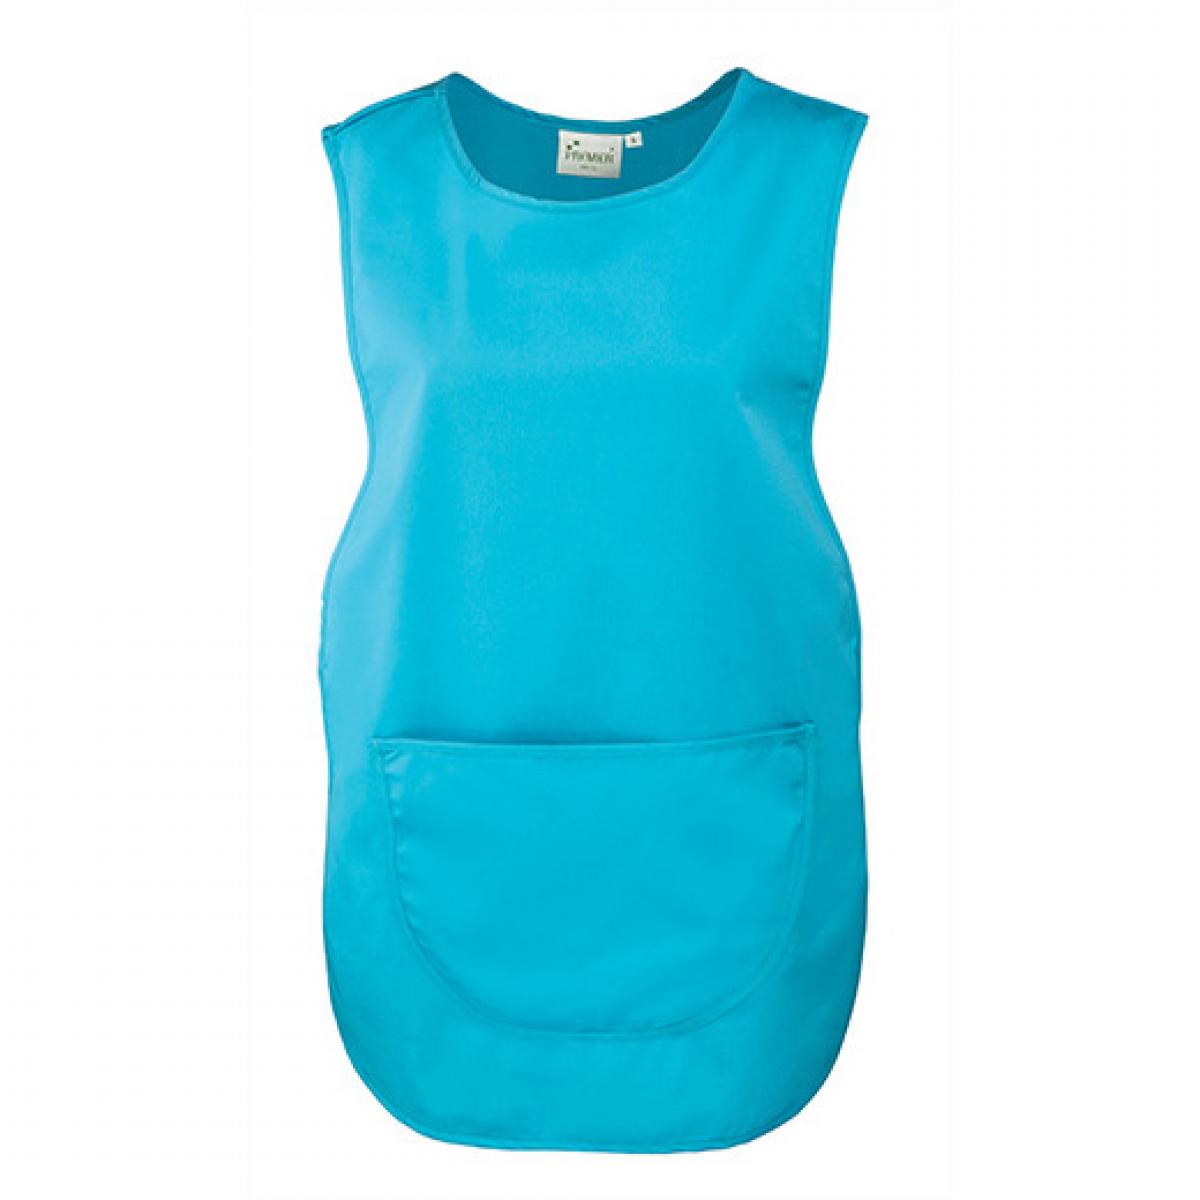 Hersteller: Premier Workwear Herstellernummer: PR171 Artikelbezeichnung: Women`s Pocket Tabard - Waschbar bis 60 °C Farbe: Turquoise (ca. Pantone 312)